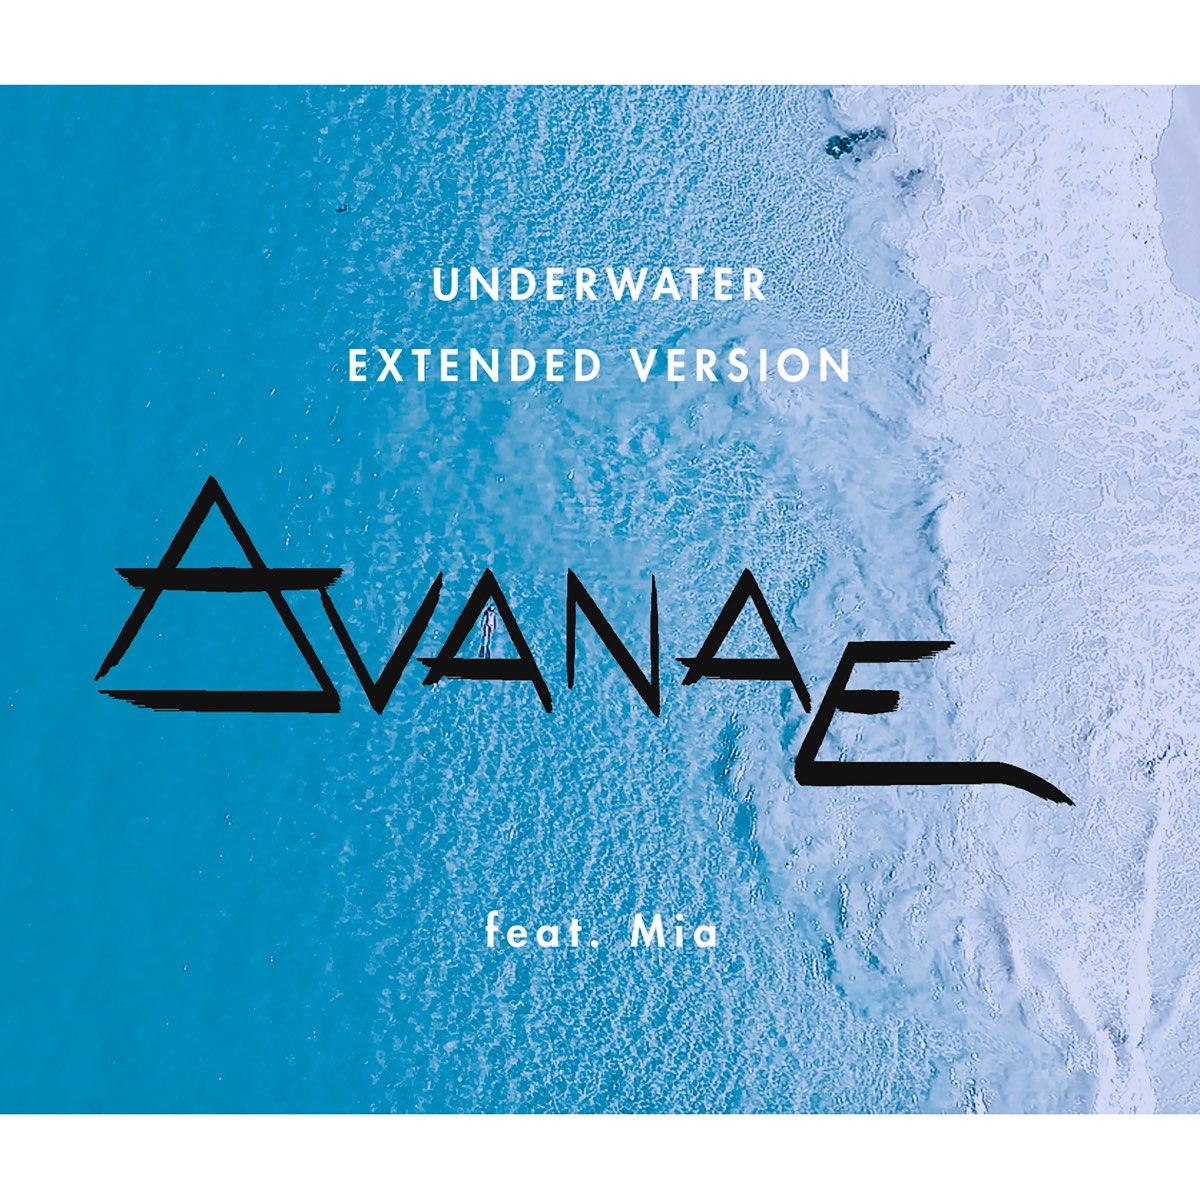 Mias feat. Underwater альбом обложка. Underwater группа. Underwater рэп группа.